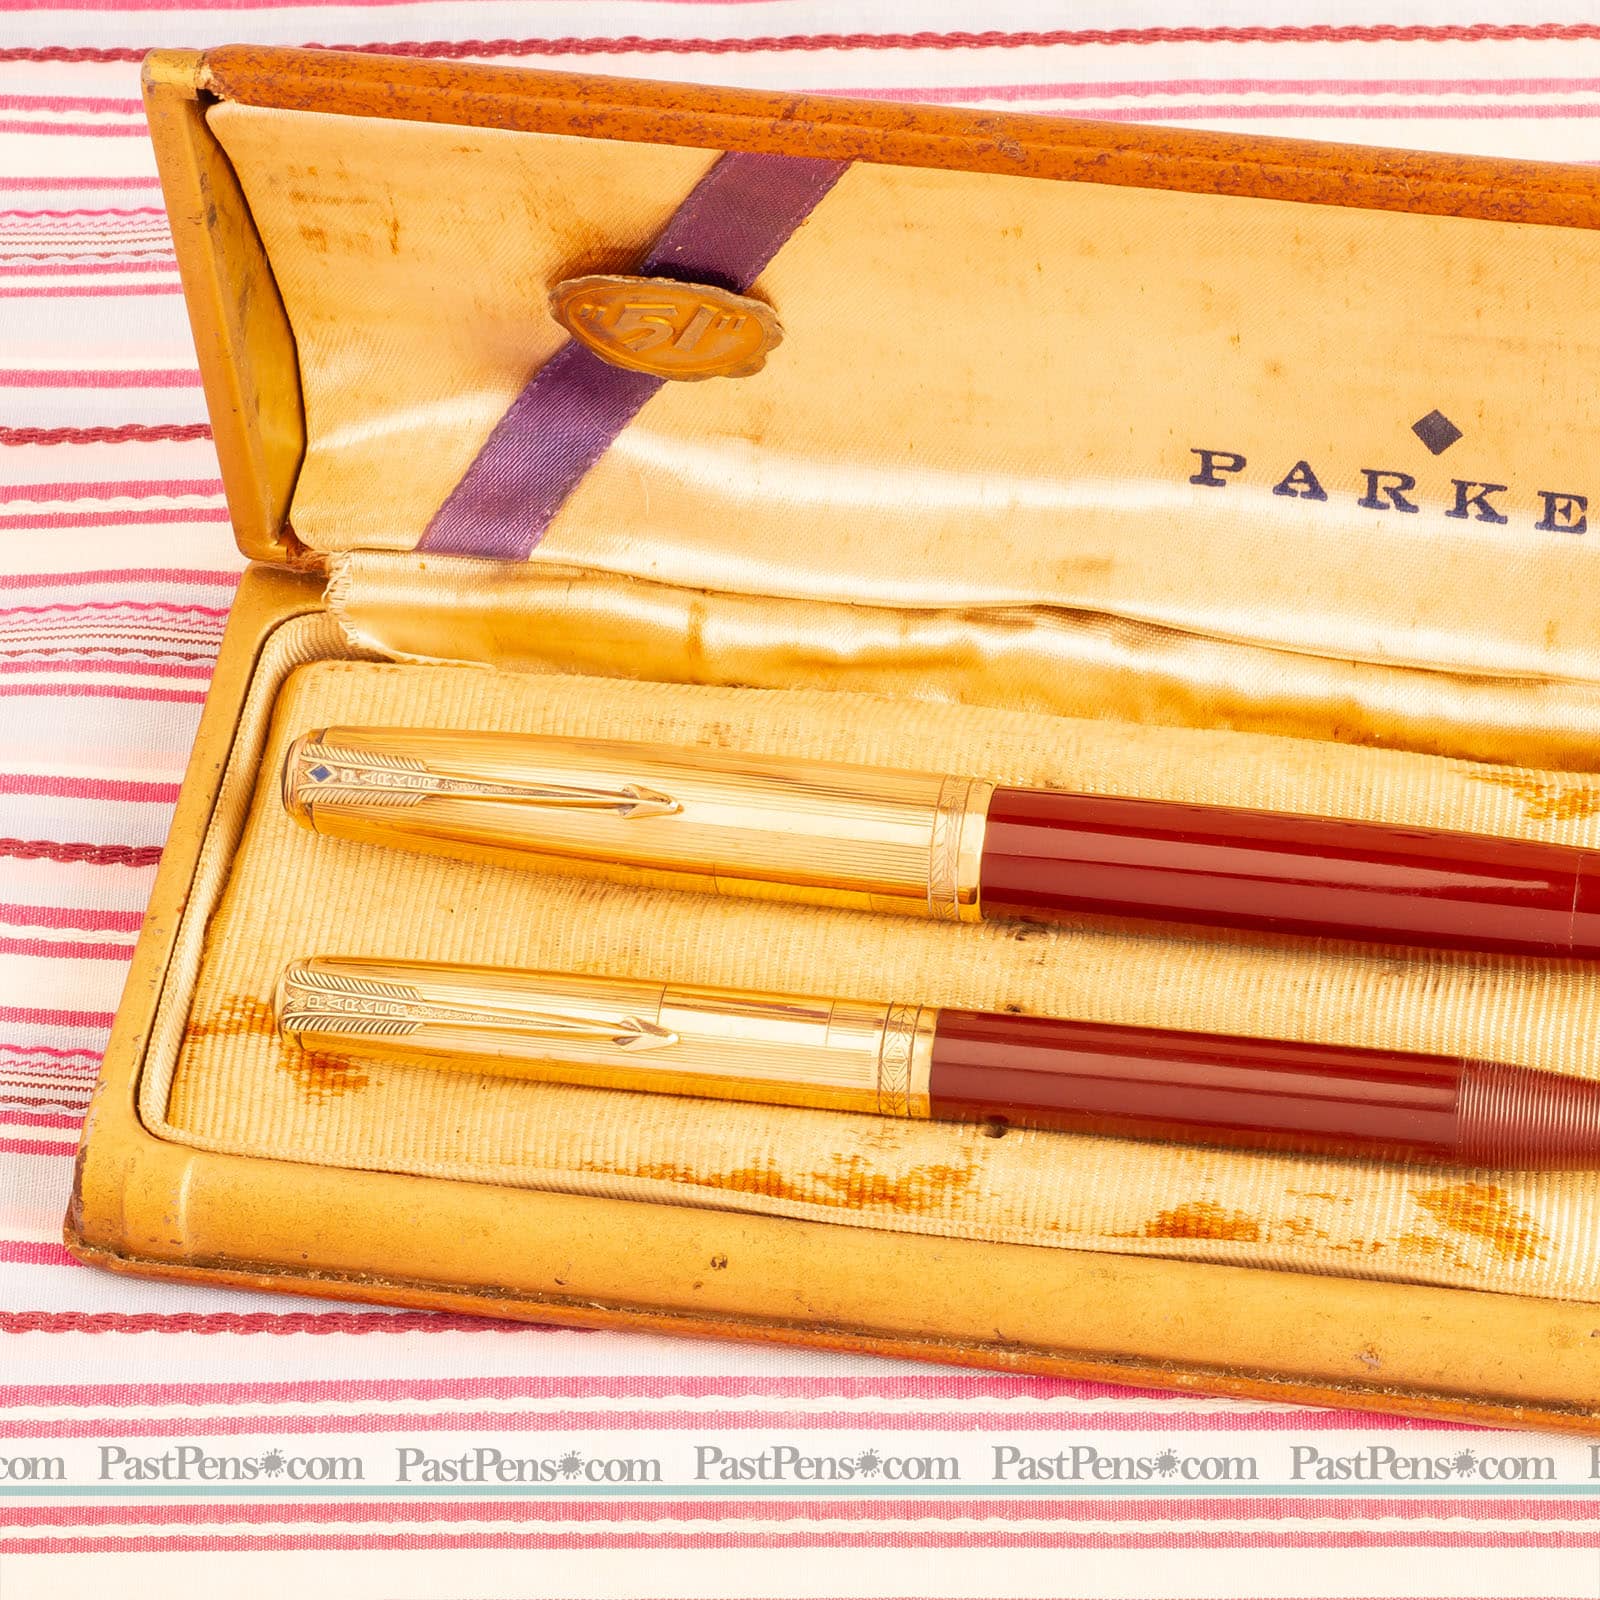 vinage parker 51 double jewel red pen pencil box set